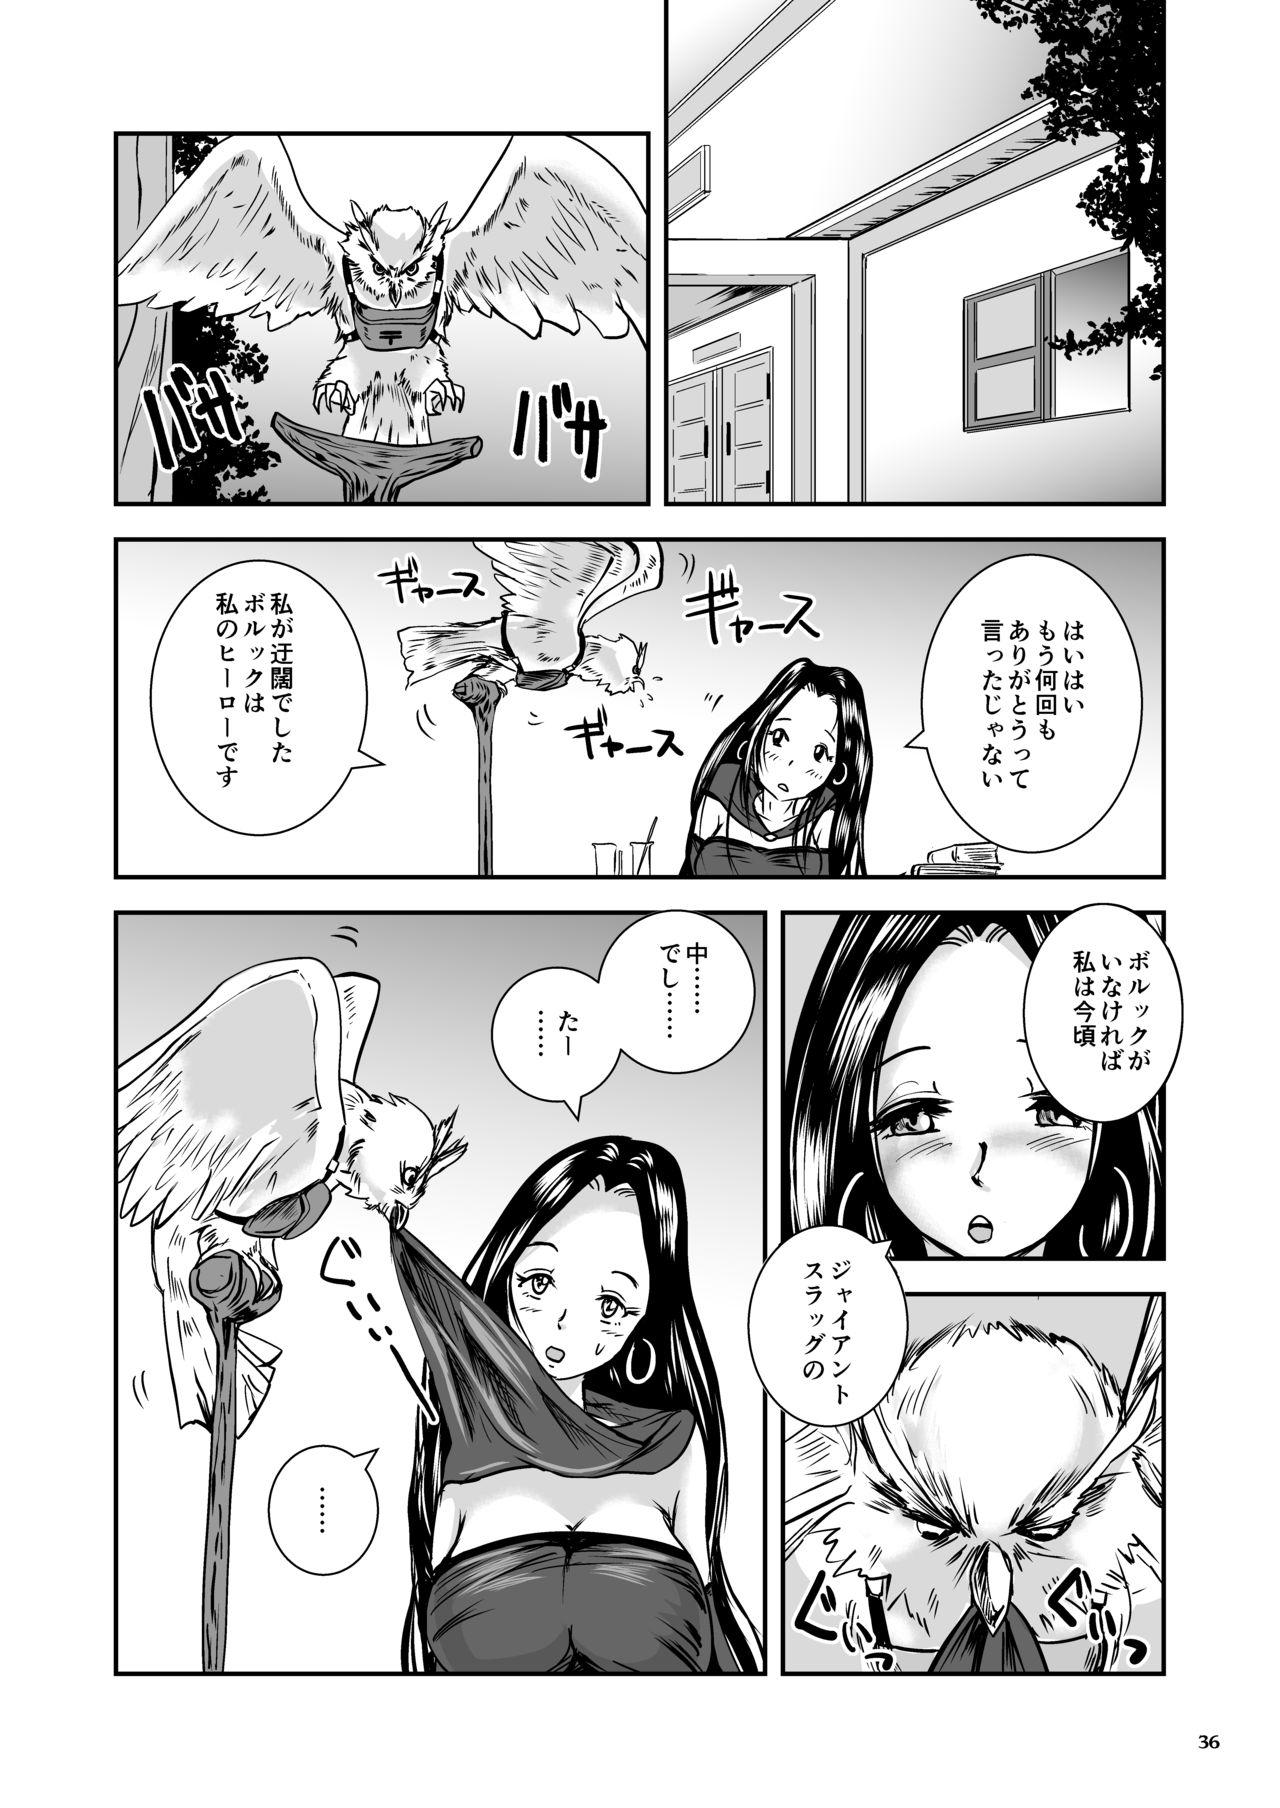 Oonamekuji to Kurokami no Mahoutsukai - Parasitized Giant Slugs V.S. Sorceress of the Black Hair as Aura 125